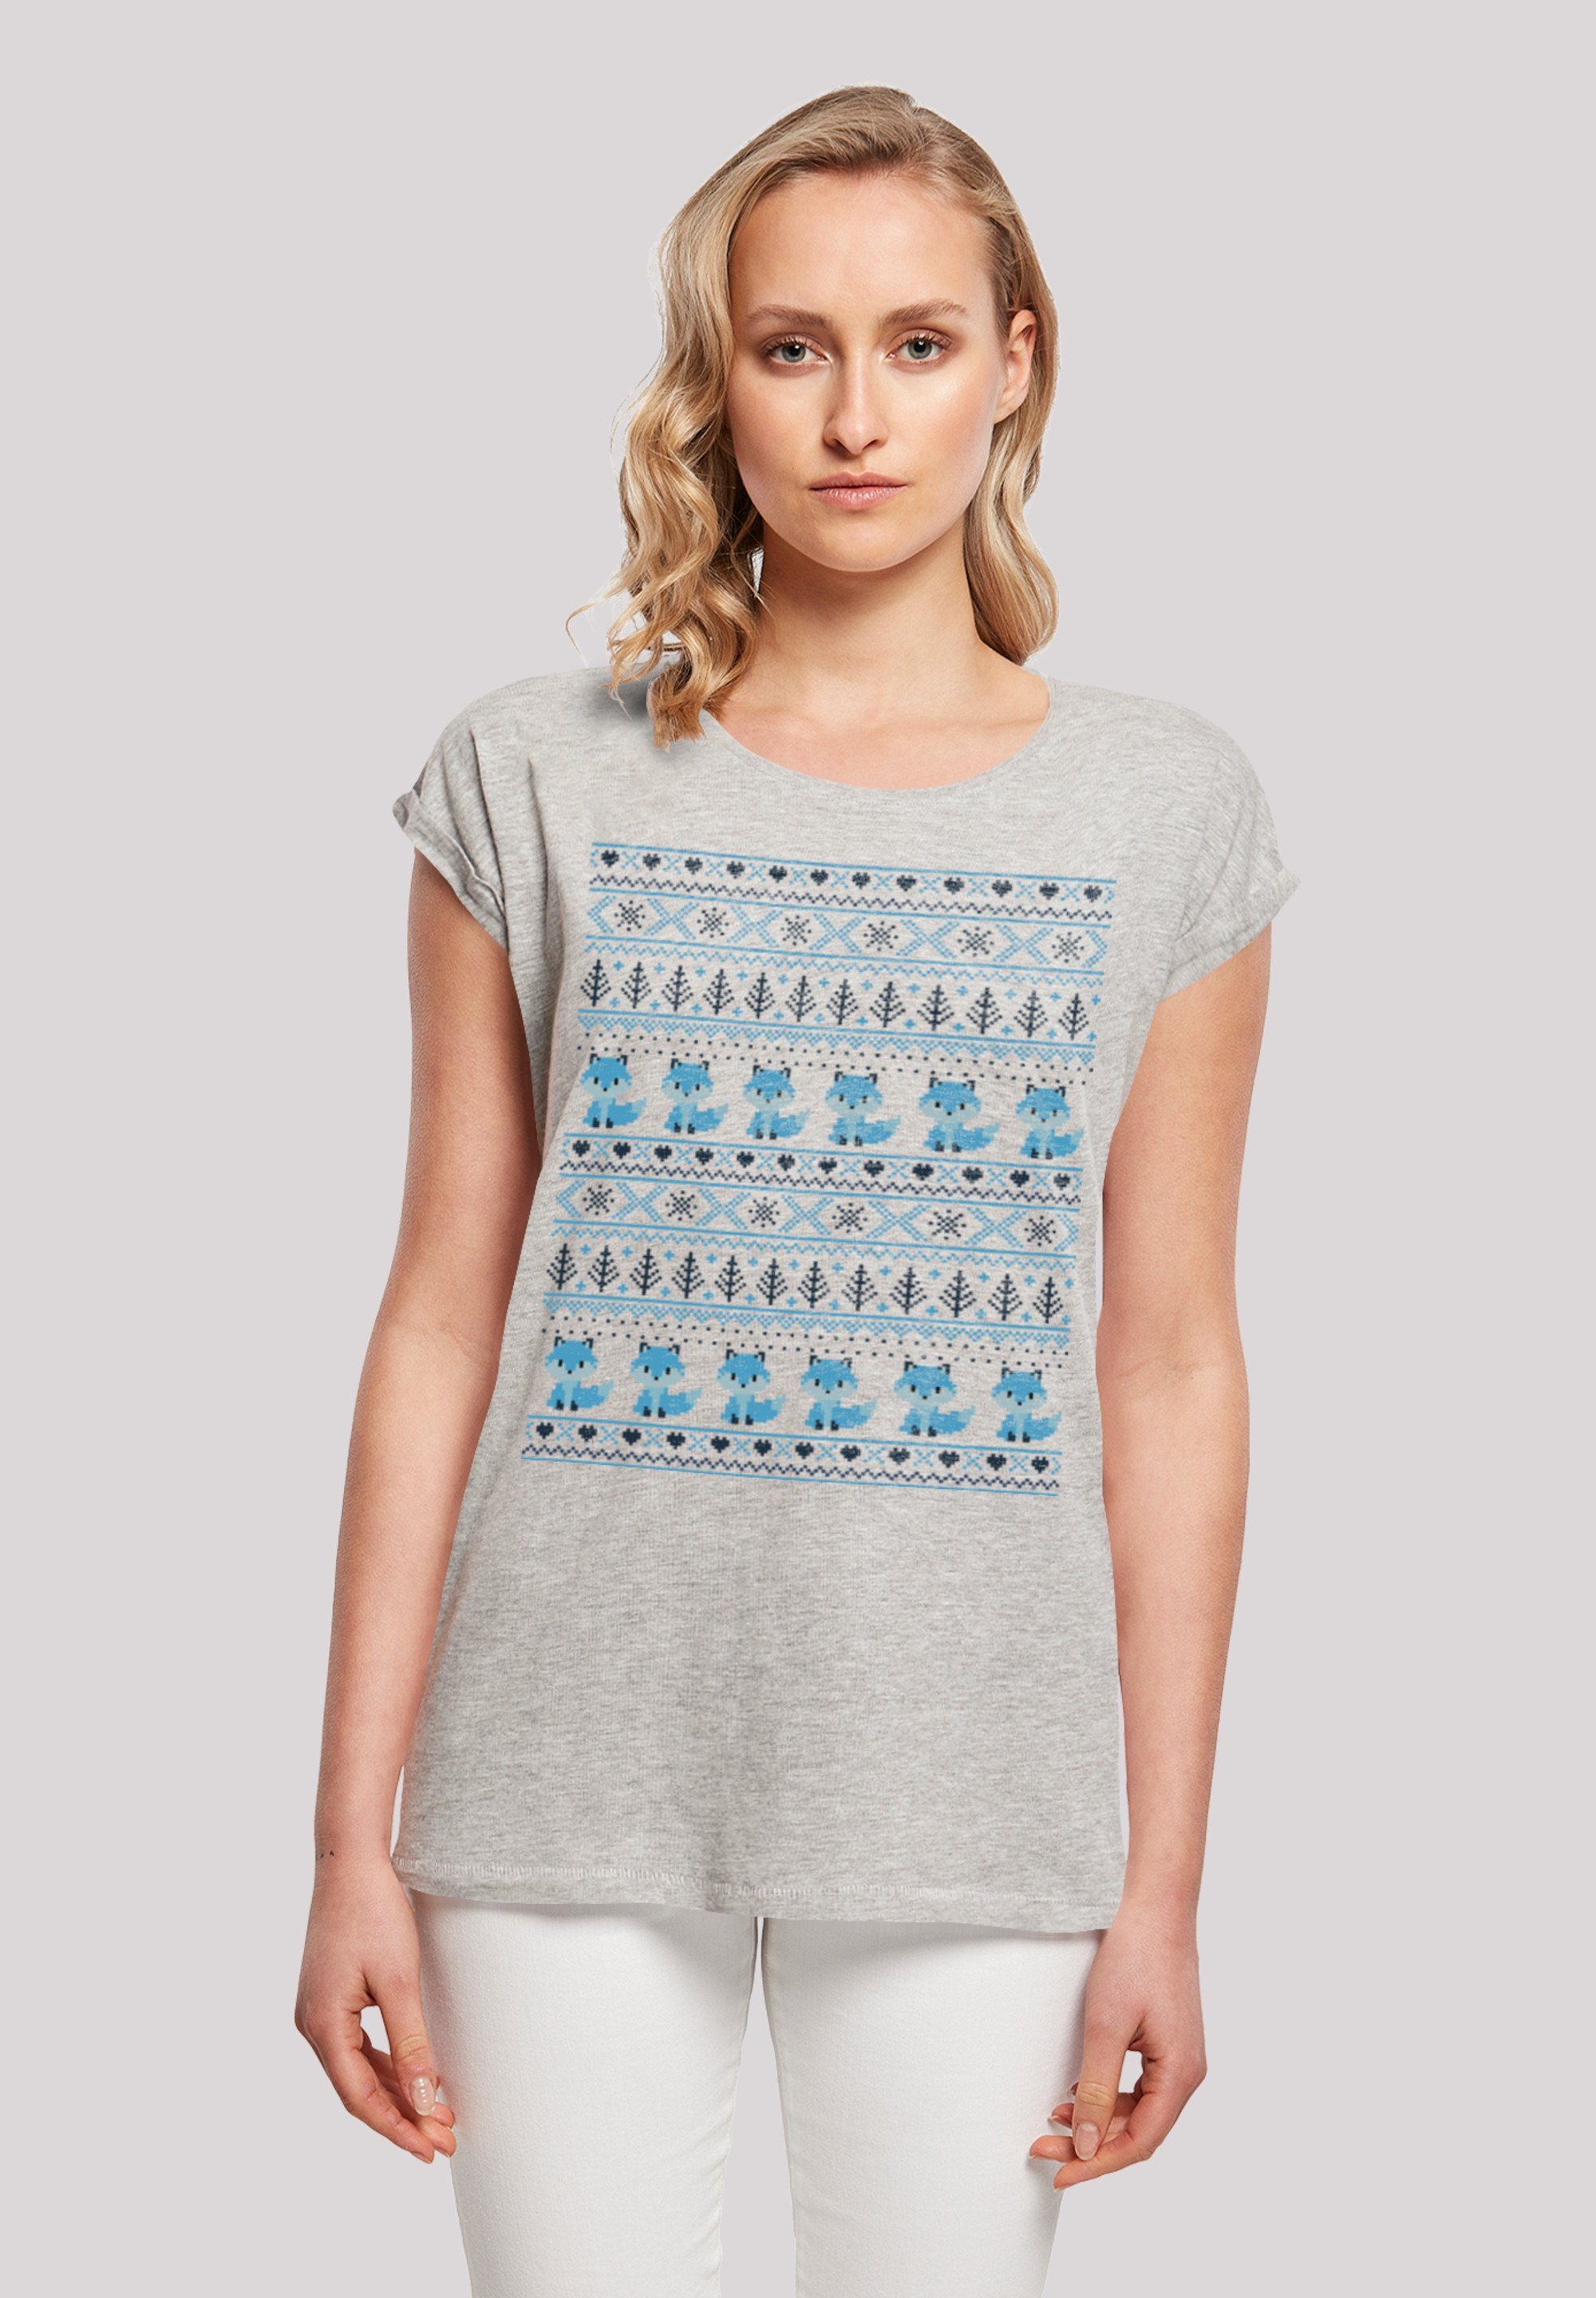 hohem Baumwollstoff Sehr Print, Weihnachten Tragekomfort F4NT4STIC T-Shirt Muster weicher mit Christmas Fuchs